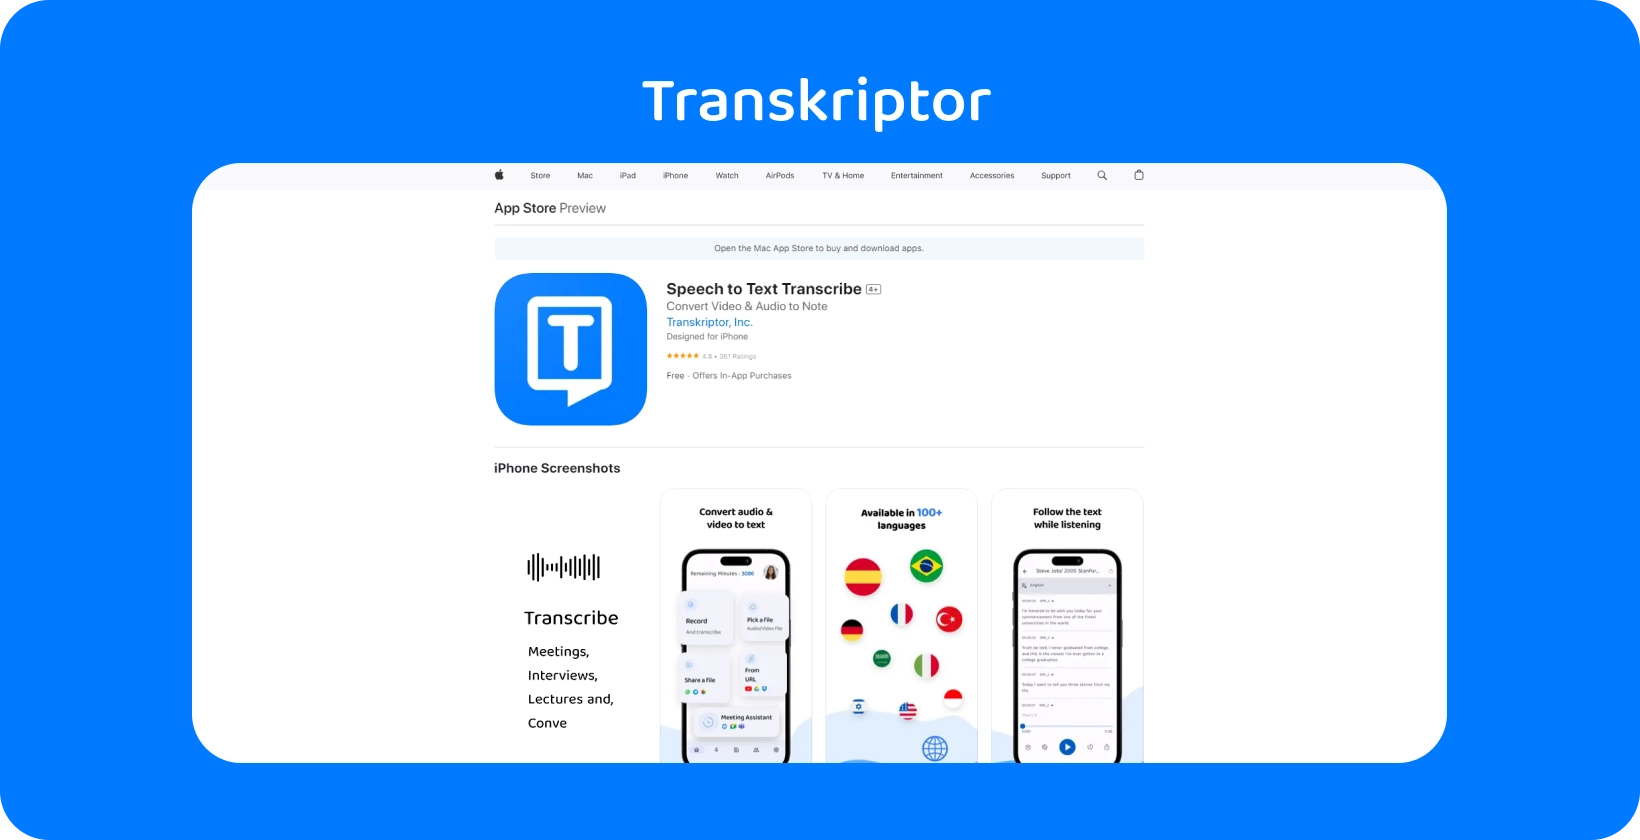 Aplikacja Transkriptor zaprezentowana na iPhone, podkreślając jej możliwości transkrypcji mowy na tekst.